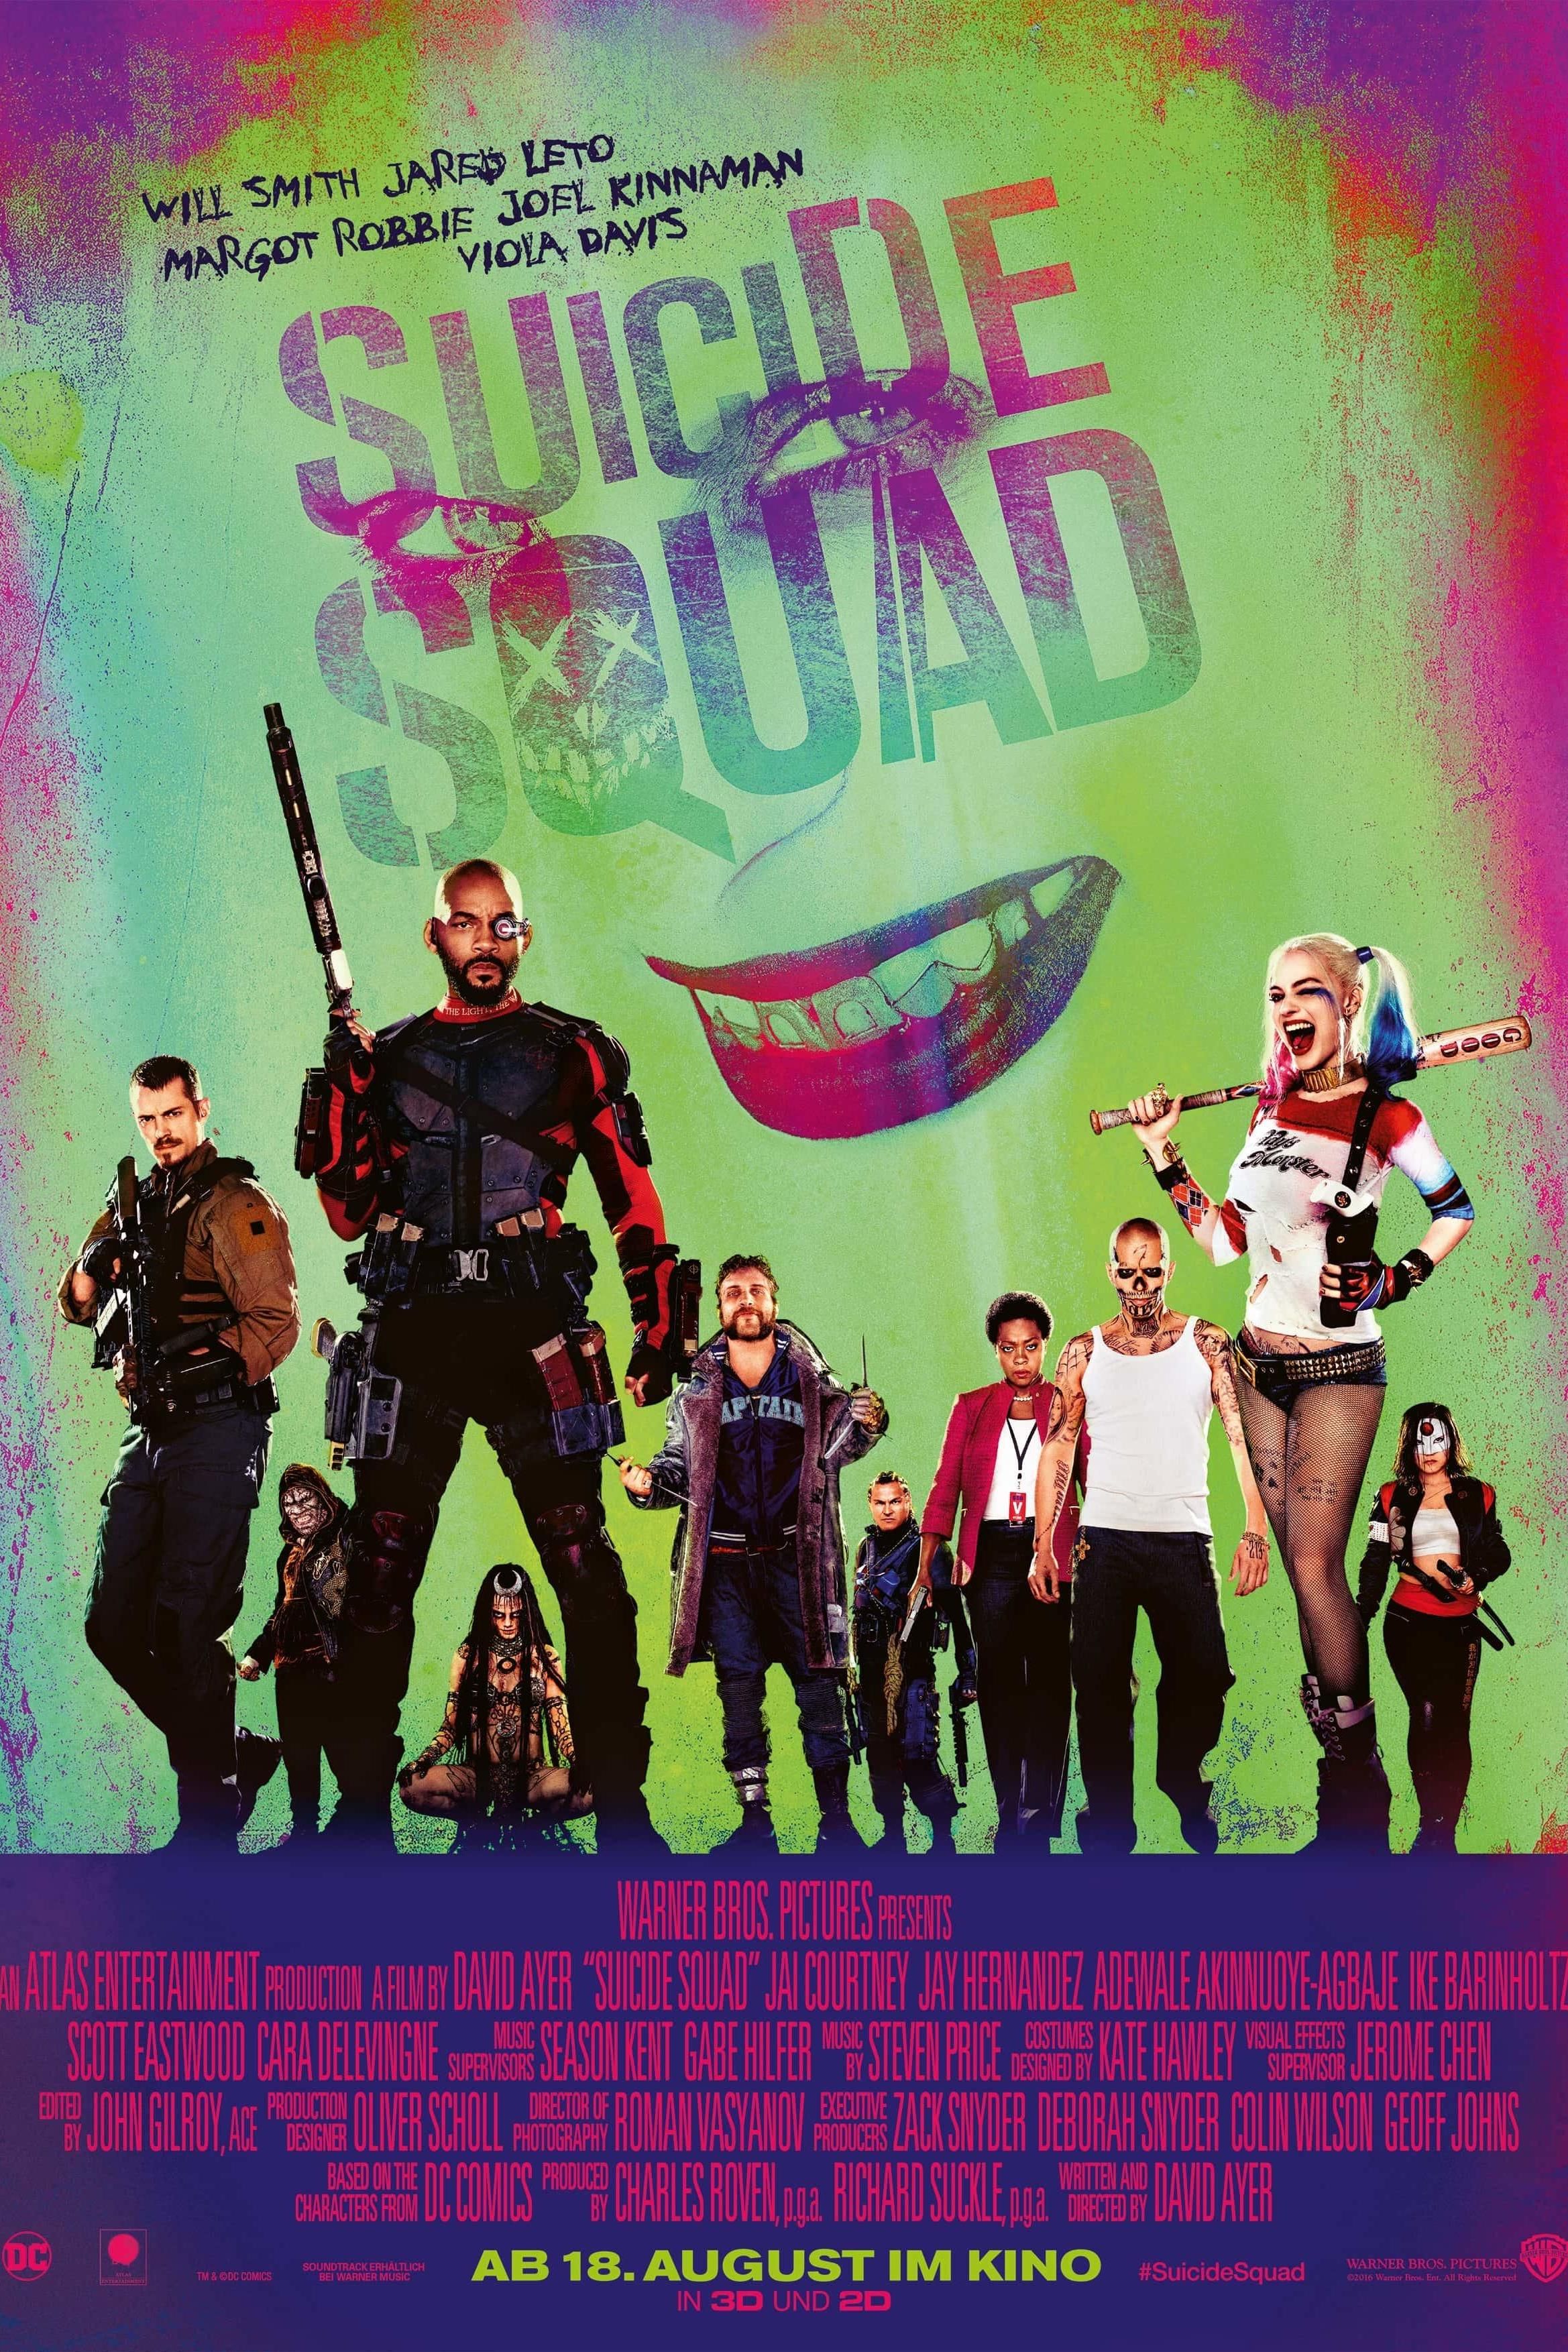 Suicide Squad Isekai - Official Announcement Teaser Trailer (2023) 